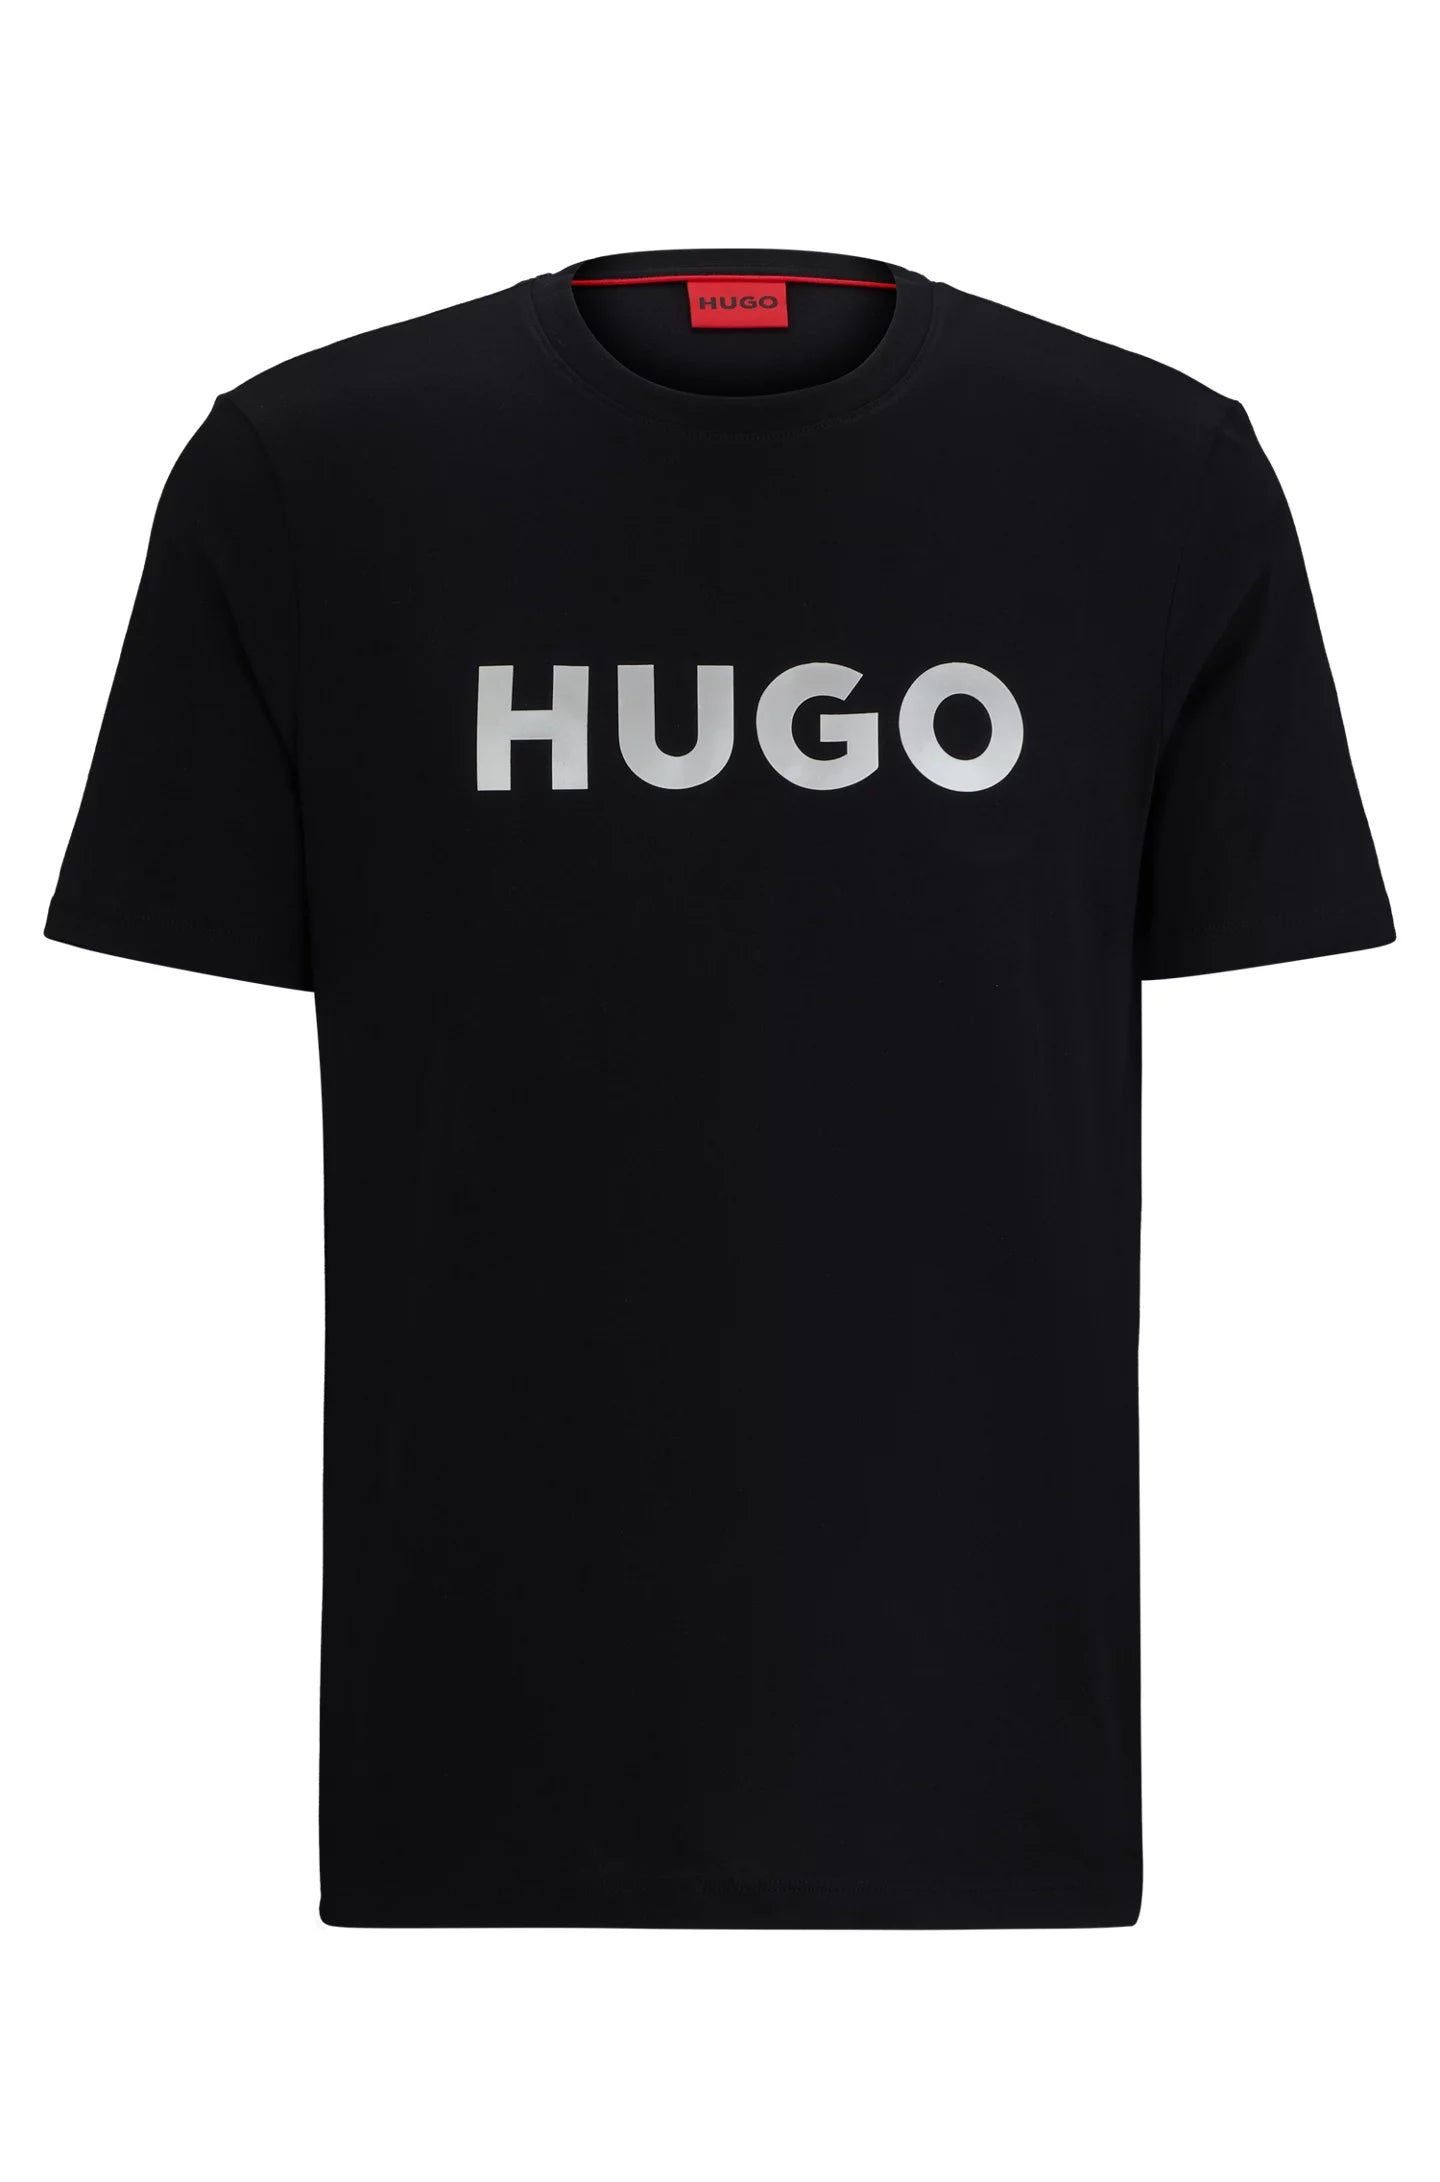 Camiseta HUGO - 50506996 001